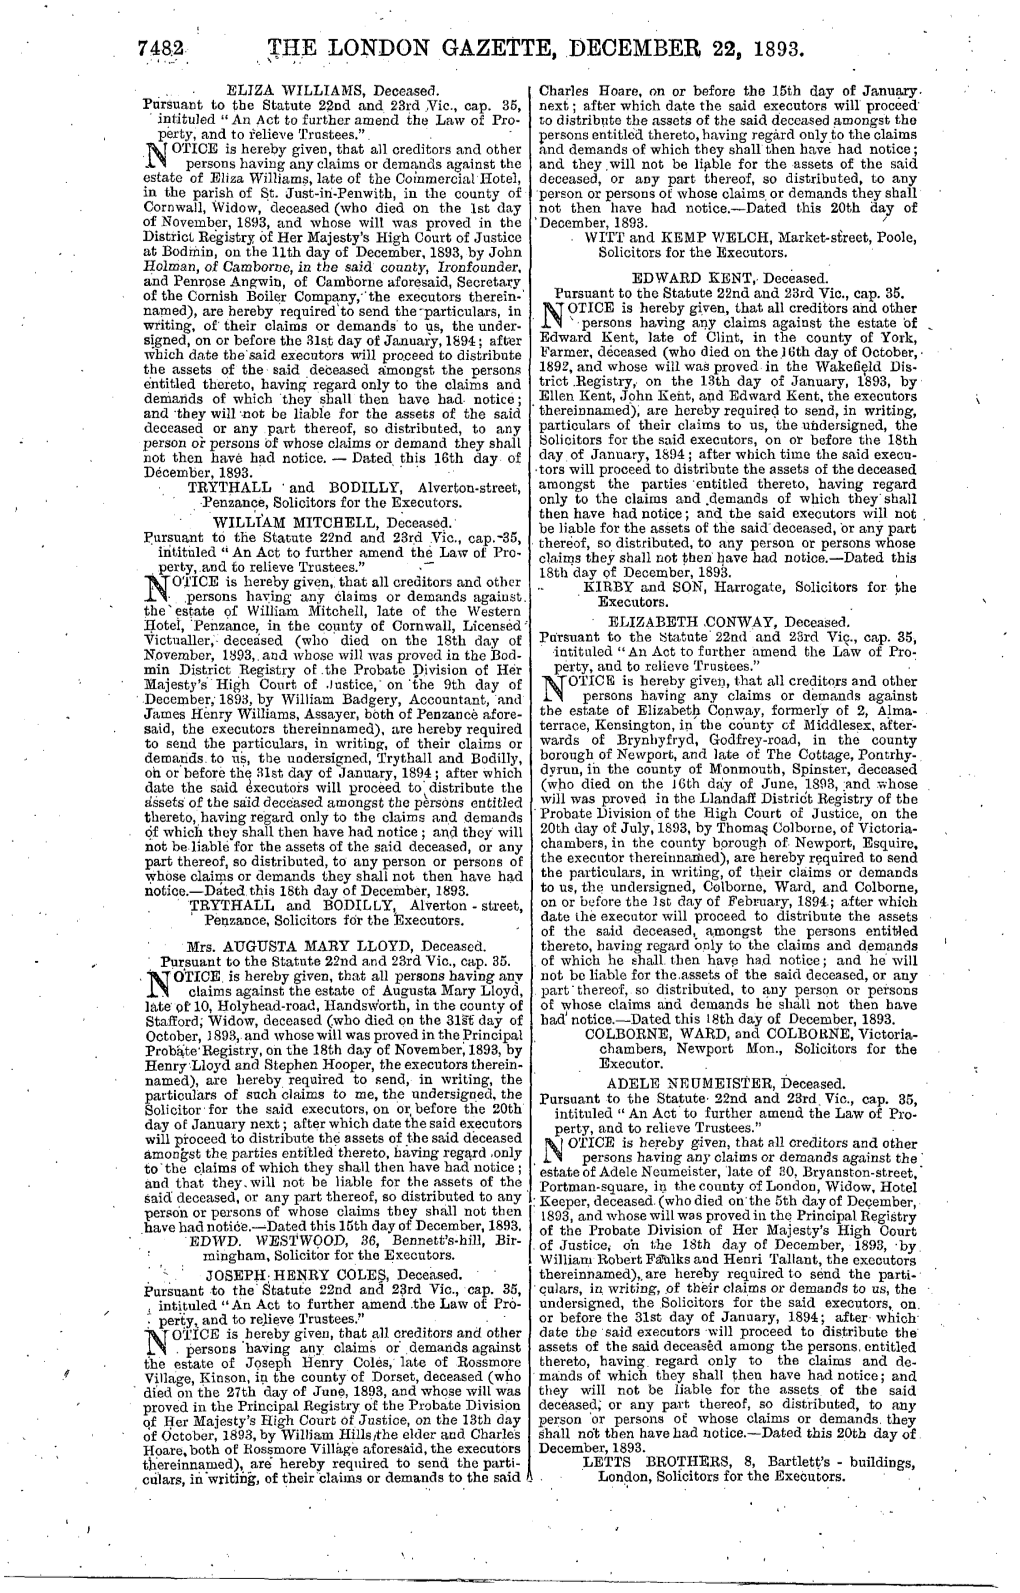 The London Gazette, Decembek 22, 1893